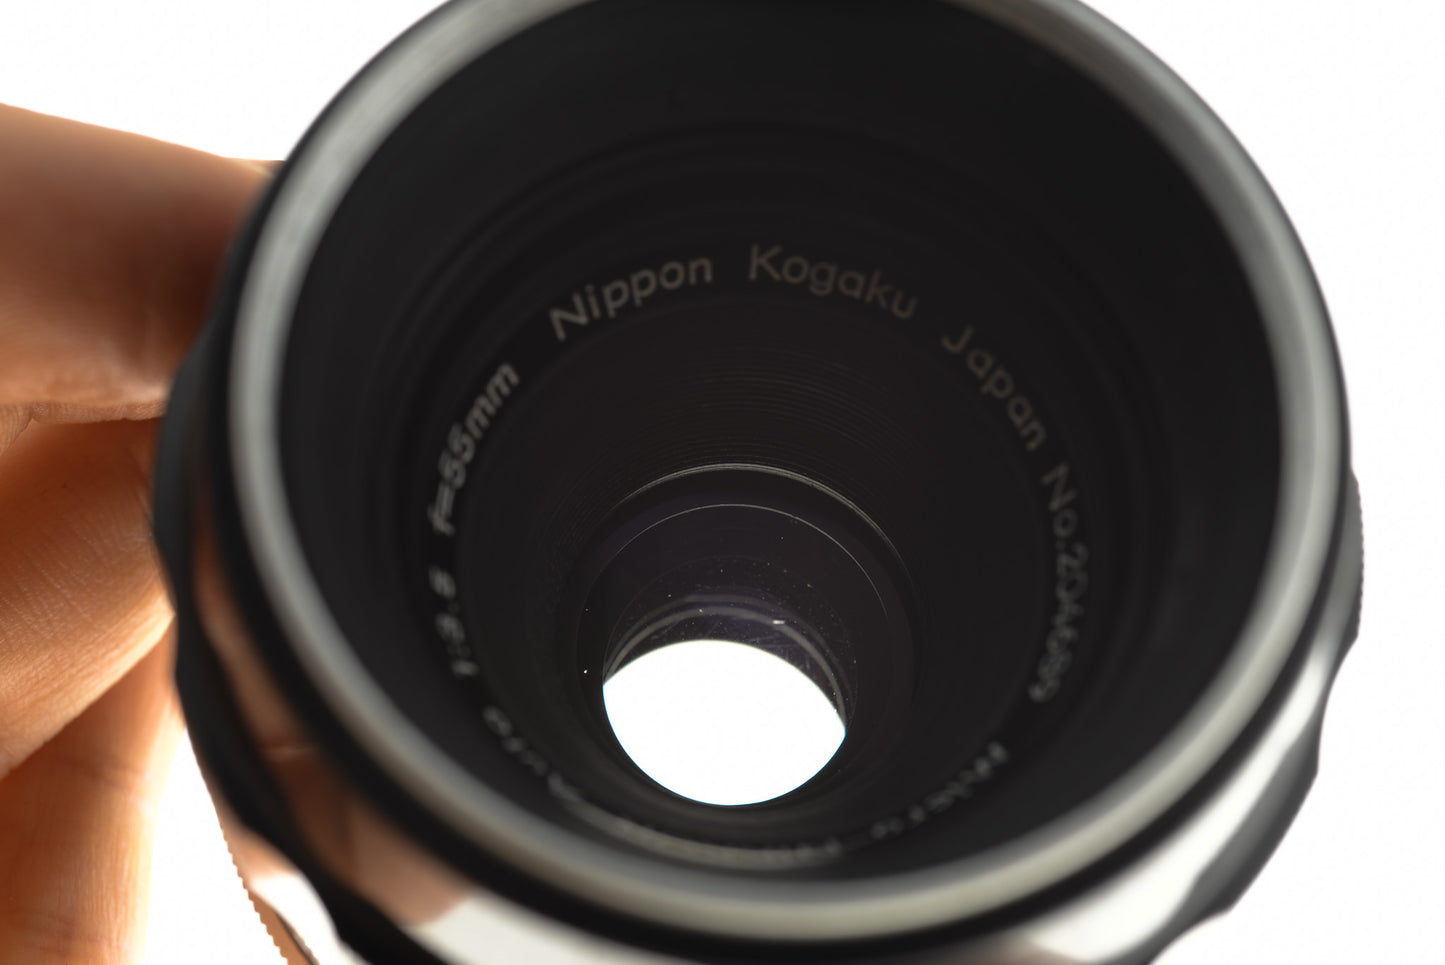 Nikon 55mm f3.5 Micro-Nikkor Auto Pre-AI